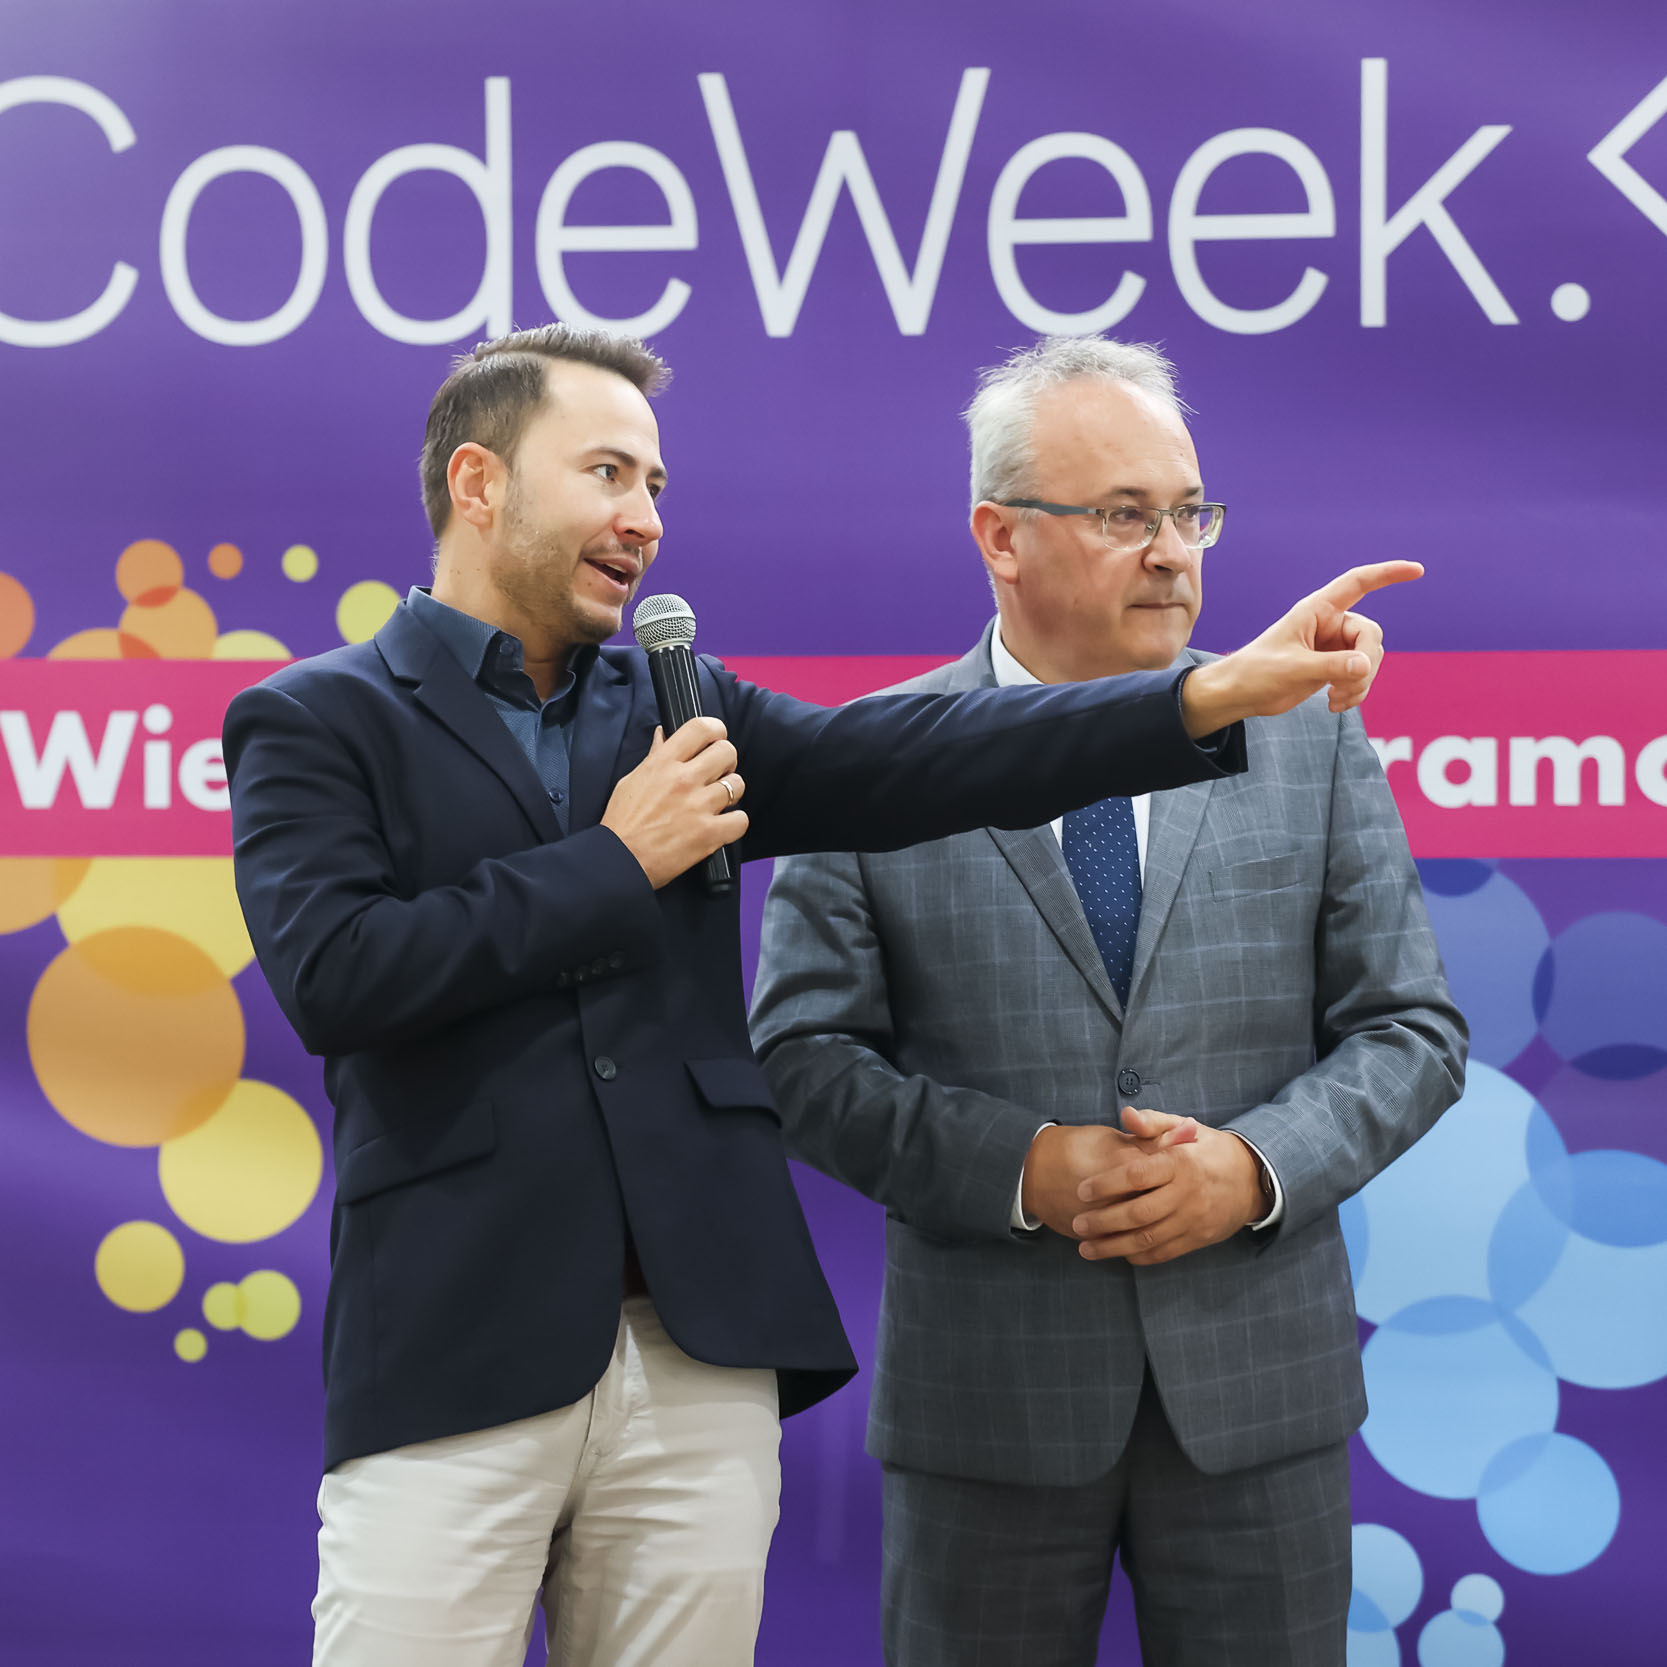 Przemawiający na tle ścianki Codeweek moderator wydarzenia, obok niego Burmistrz Augustowa Mirosław Karolczuk